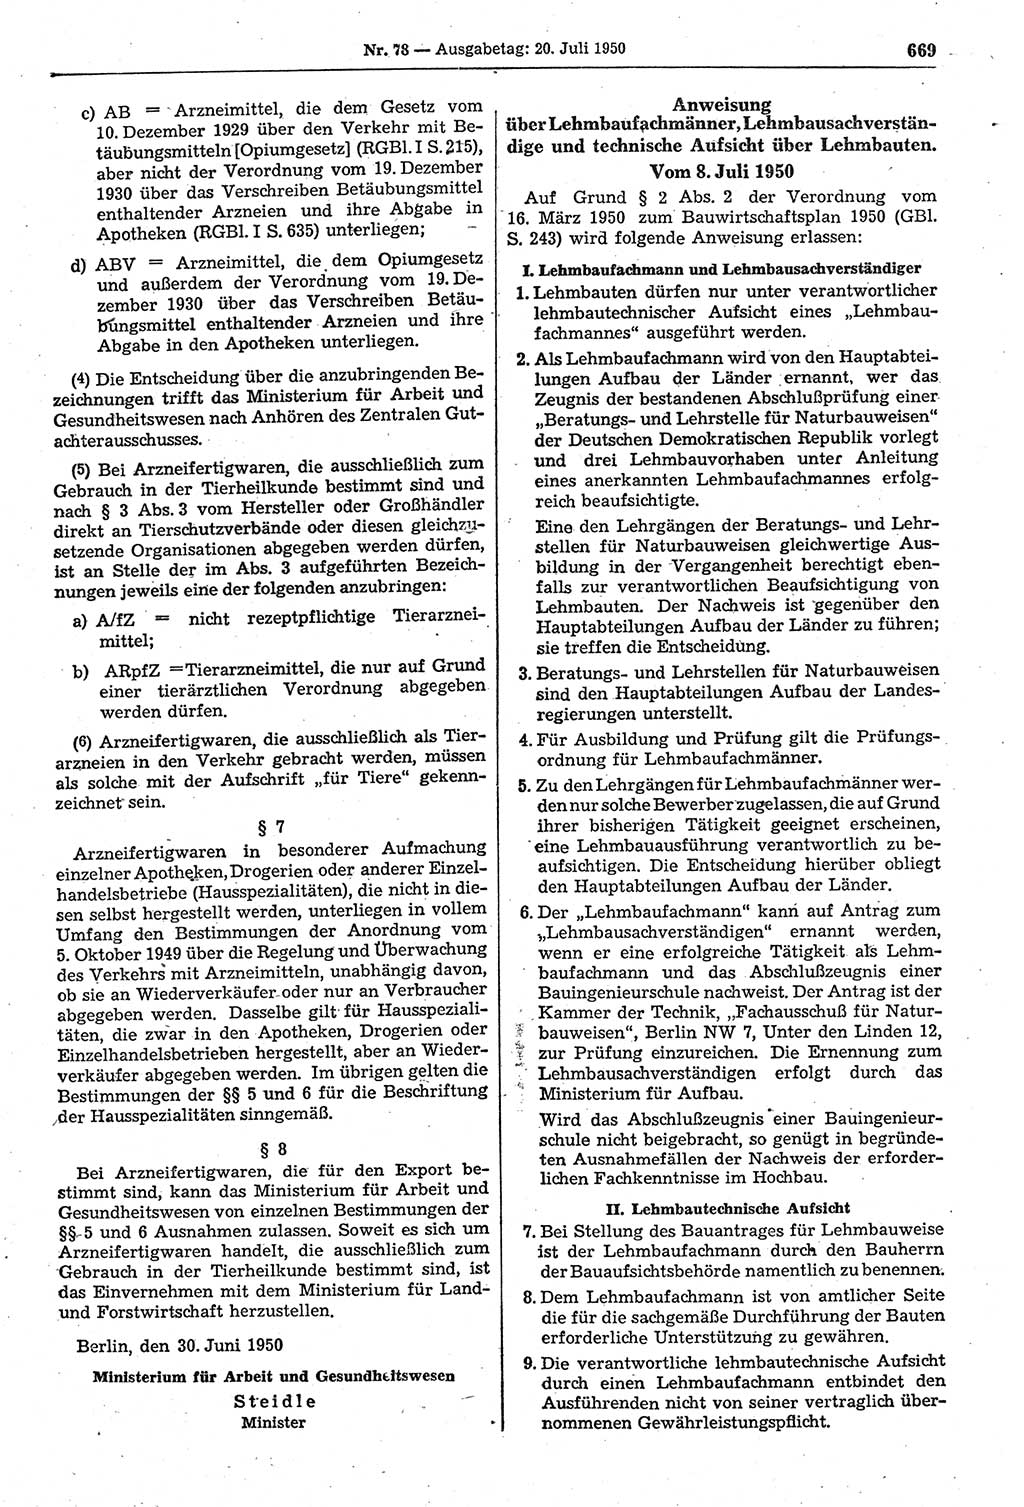 Gesetzblatt (GBl.) der Deutschen Demokratischen Republik (DDR) 1950, Seite 669 (GBl. DDR 1950, S. 669)